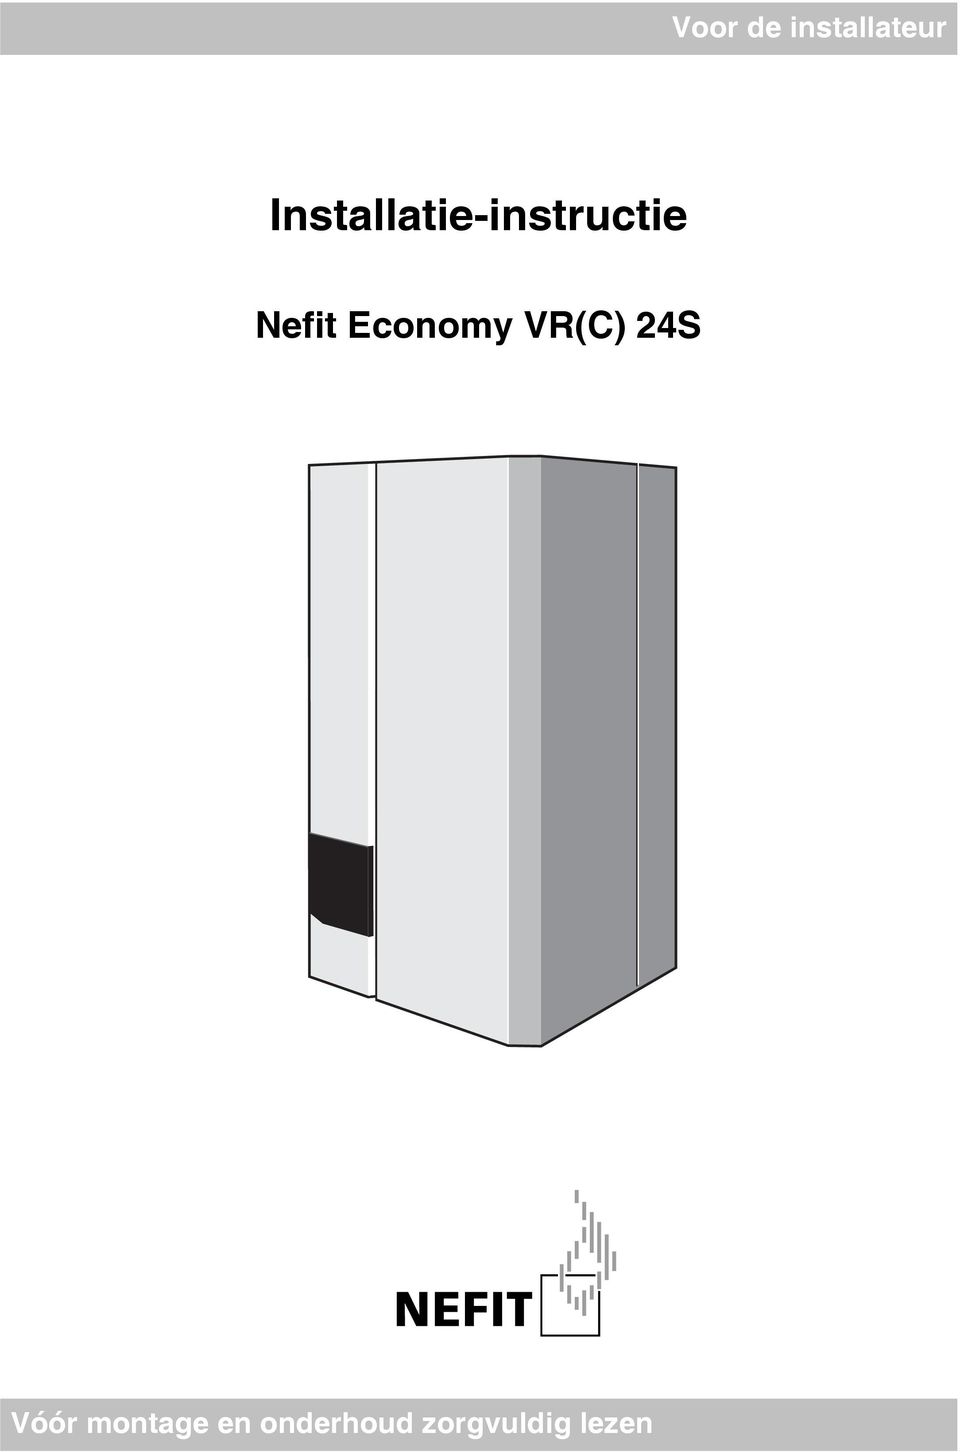 Nefit Economy VR(C) 24S